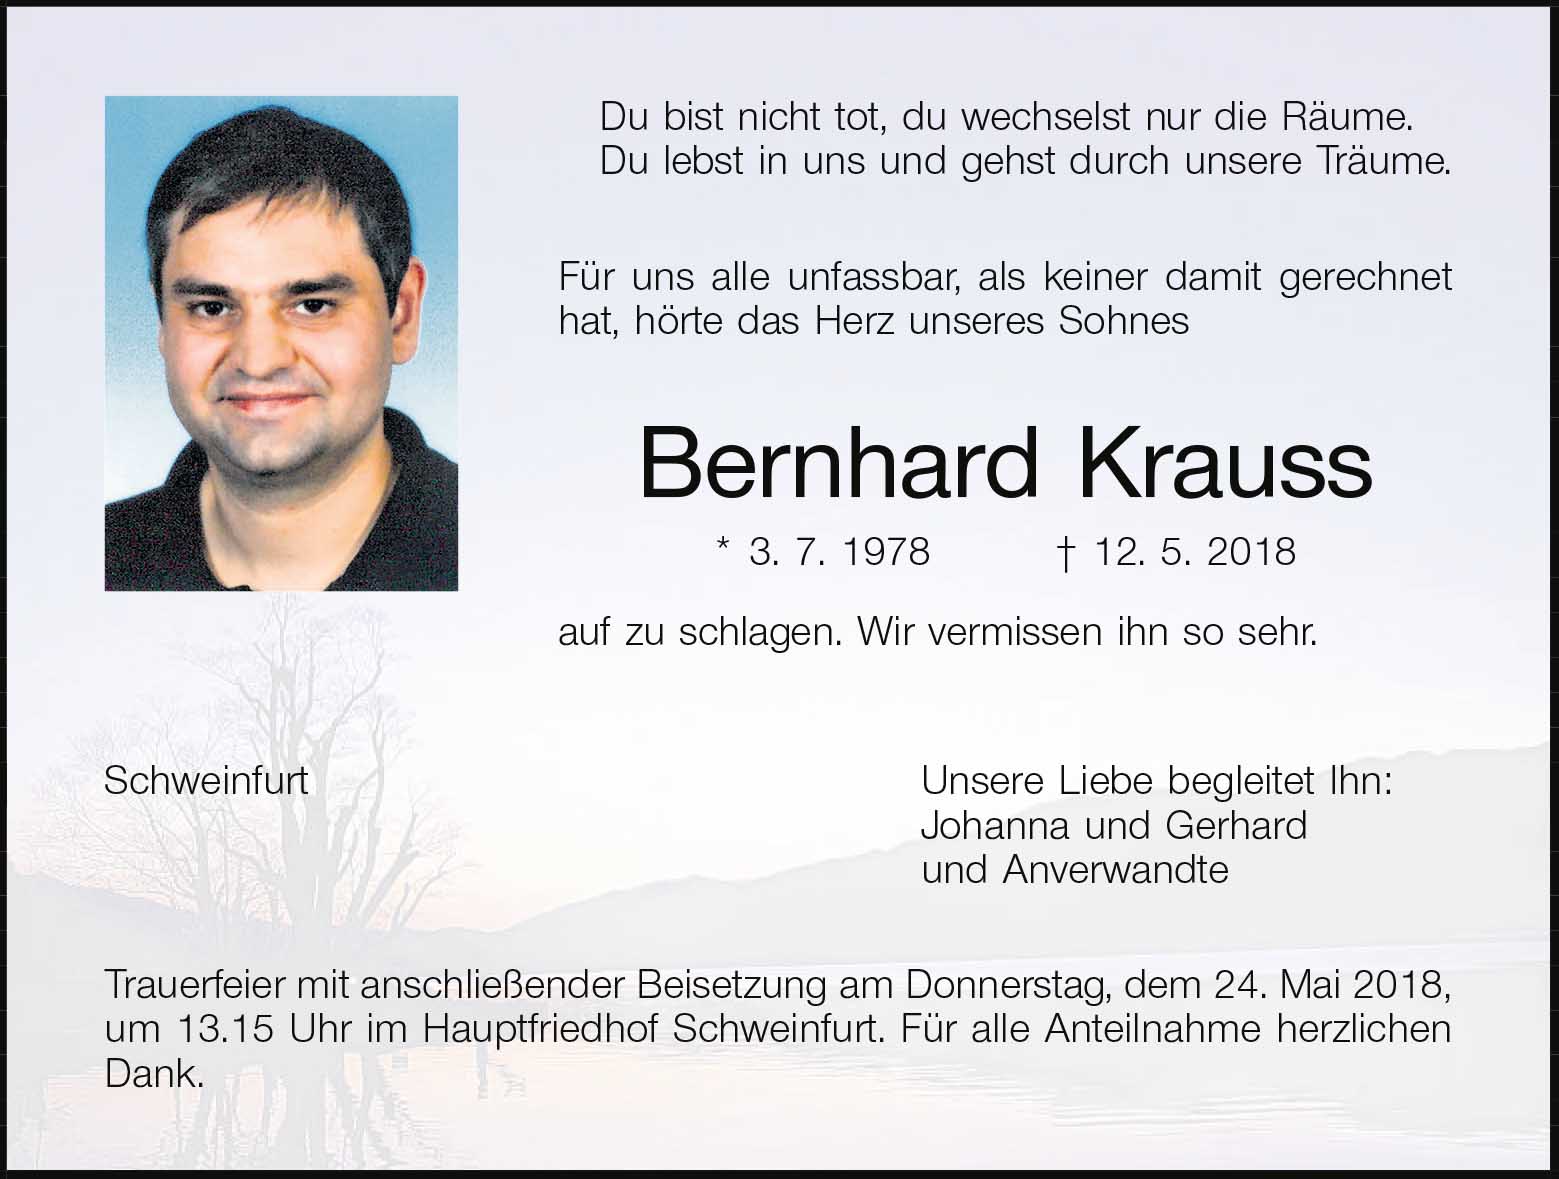 Bernhard Krauss